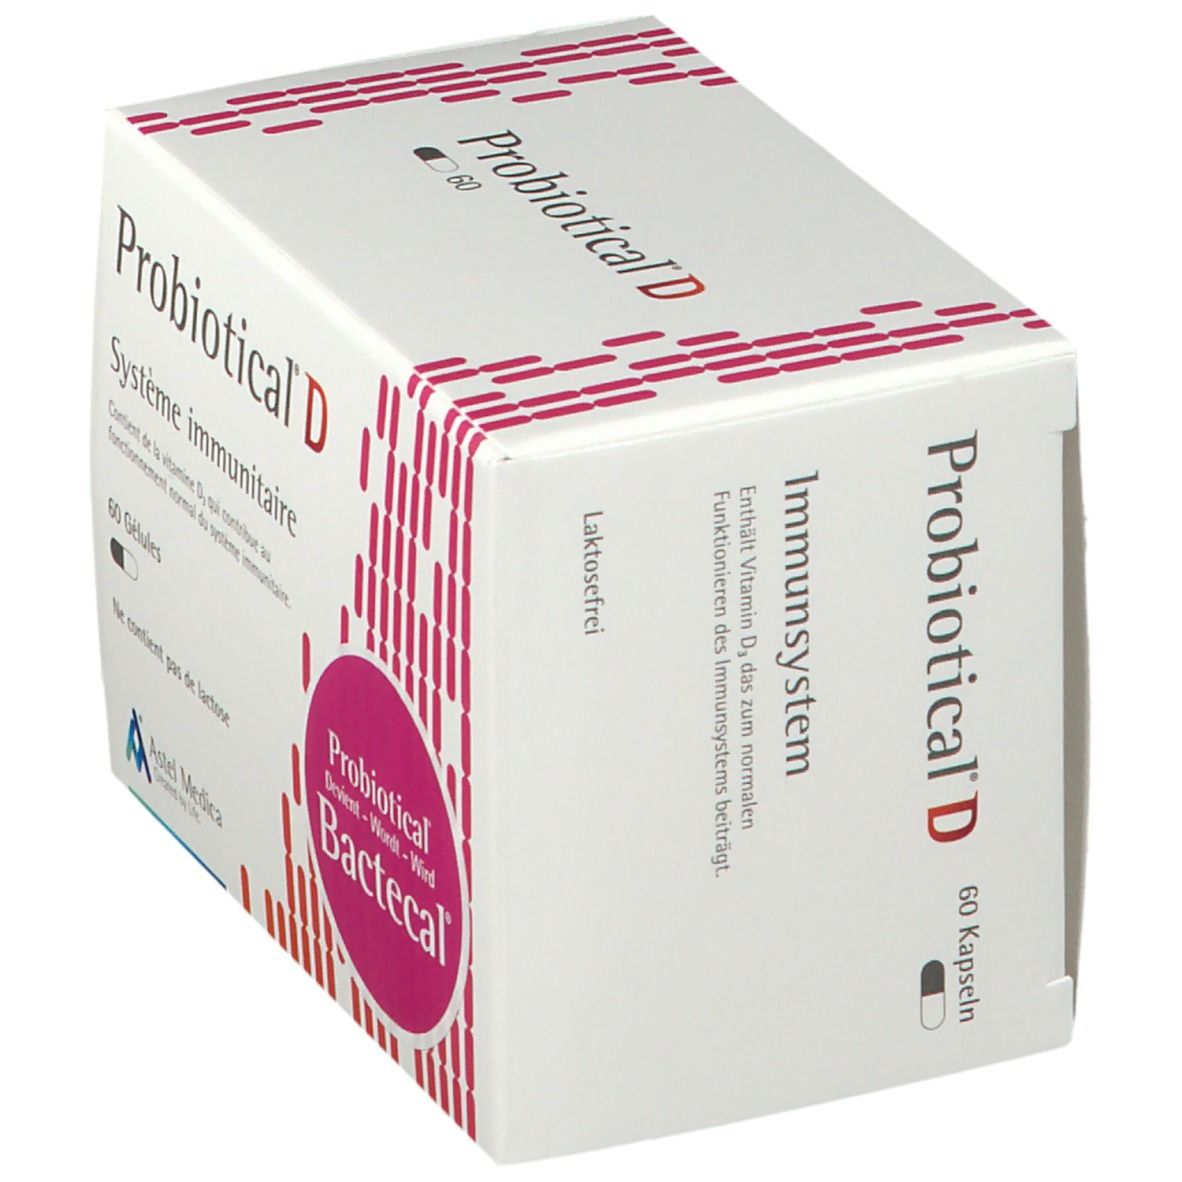 Probiotical® D